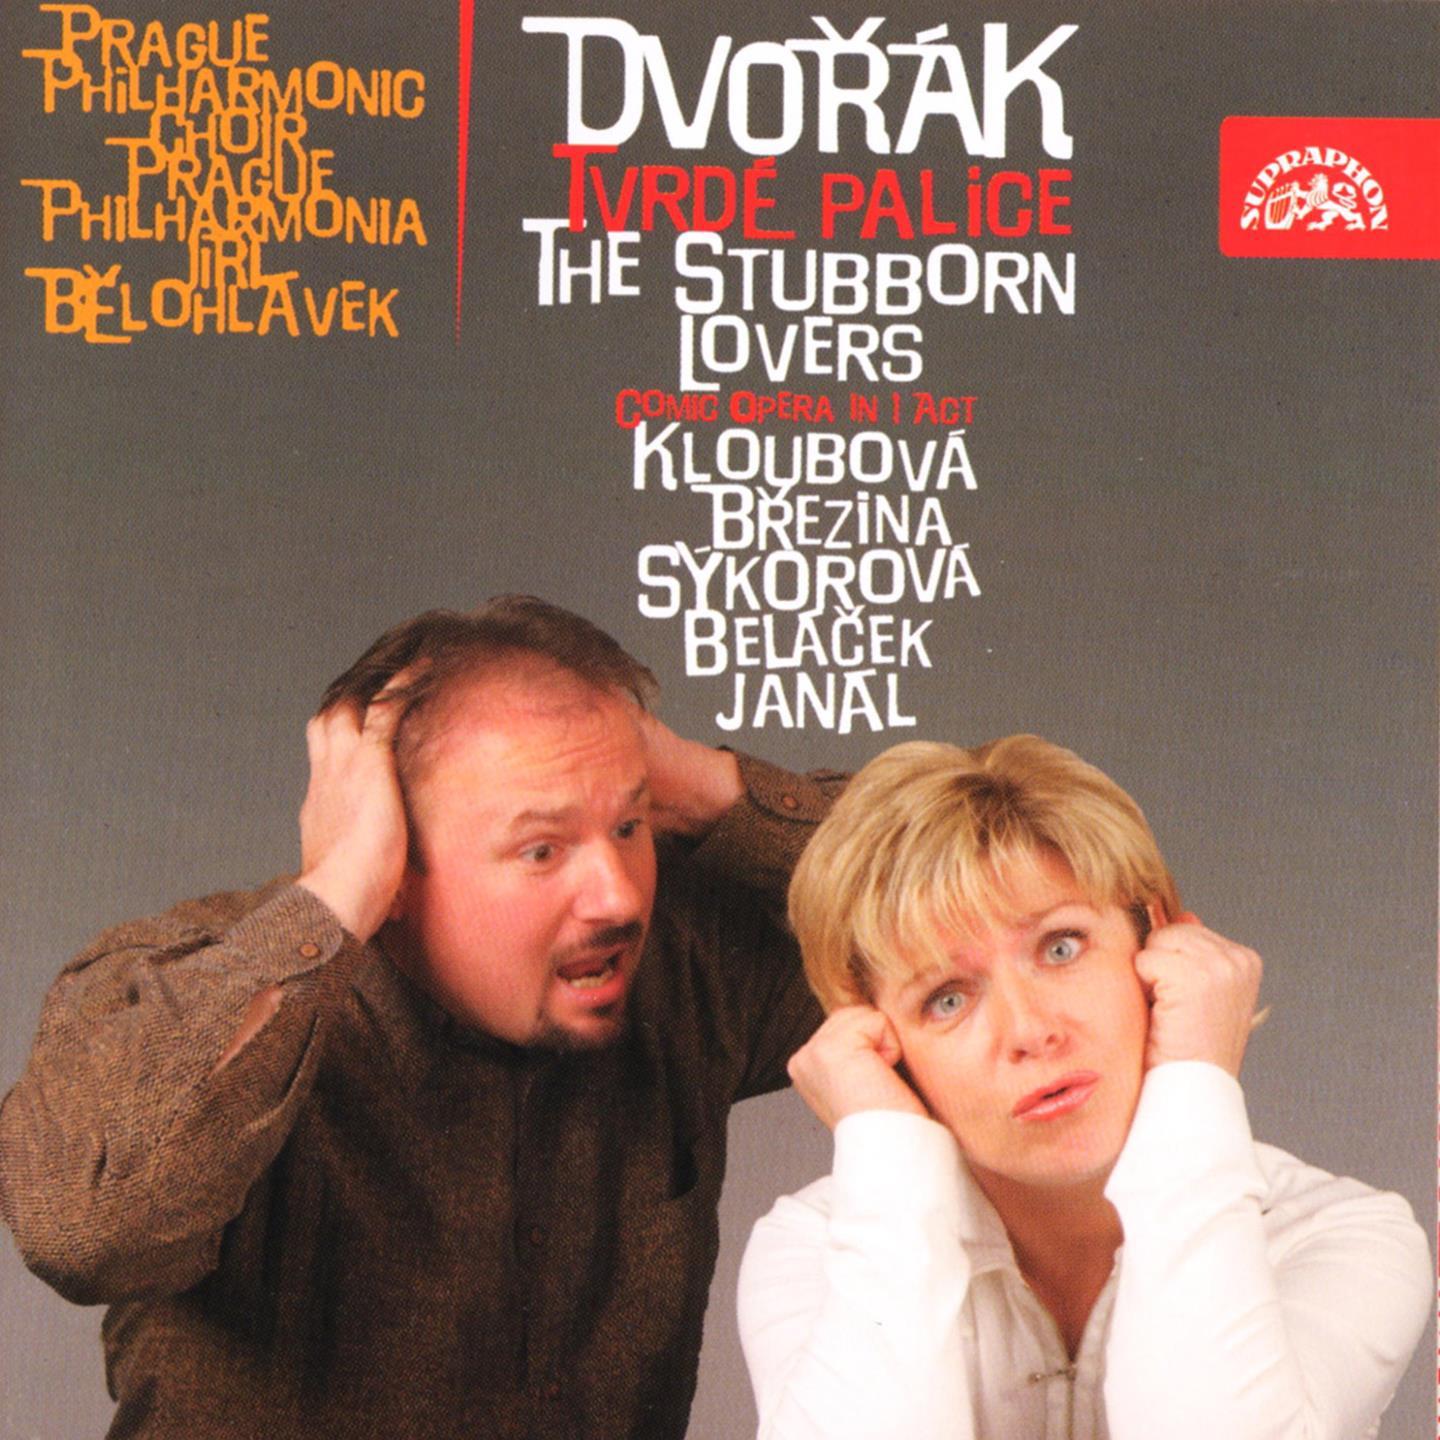 Dvoa k: The Stubborn Lovers